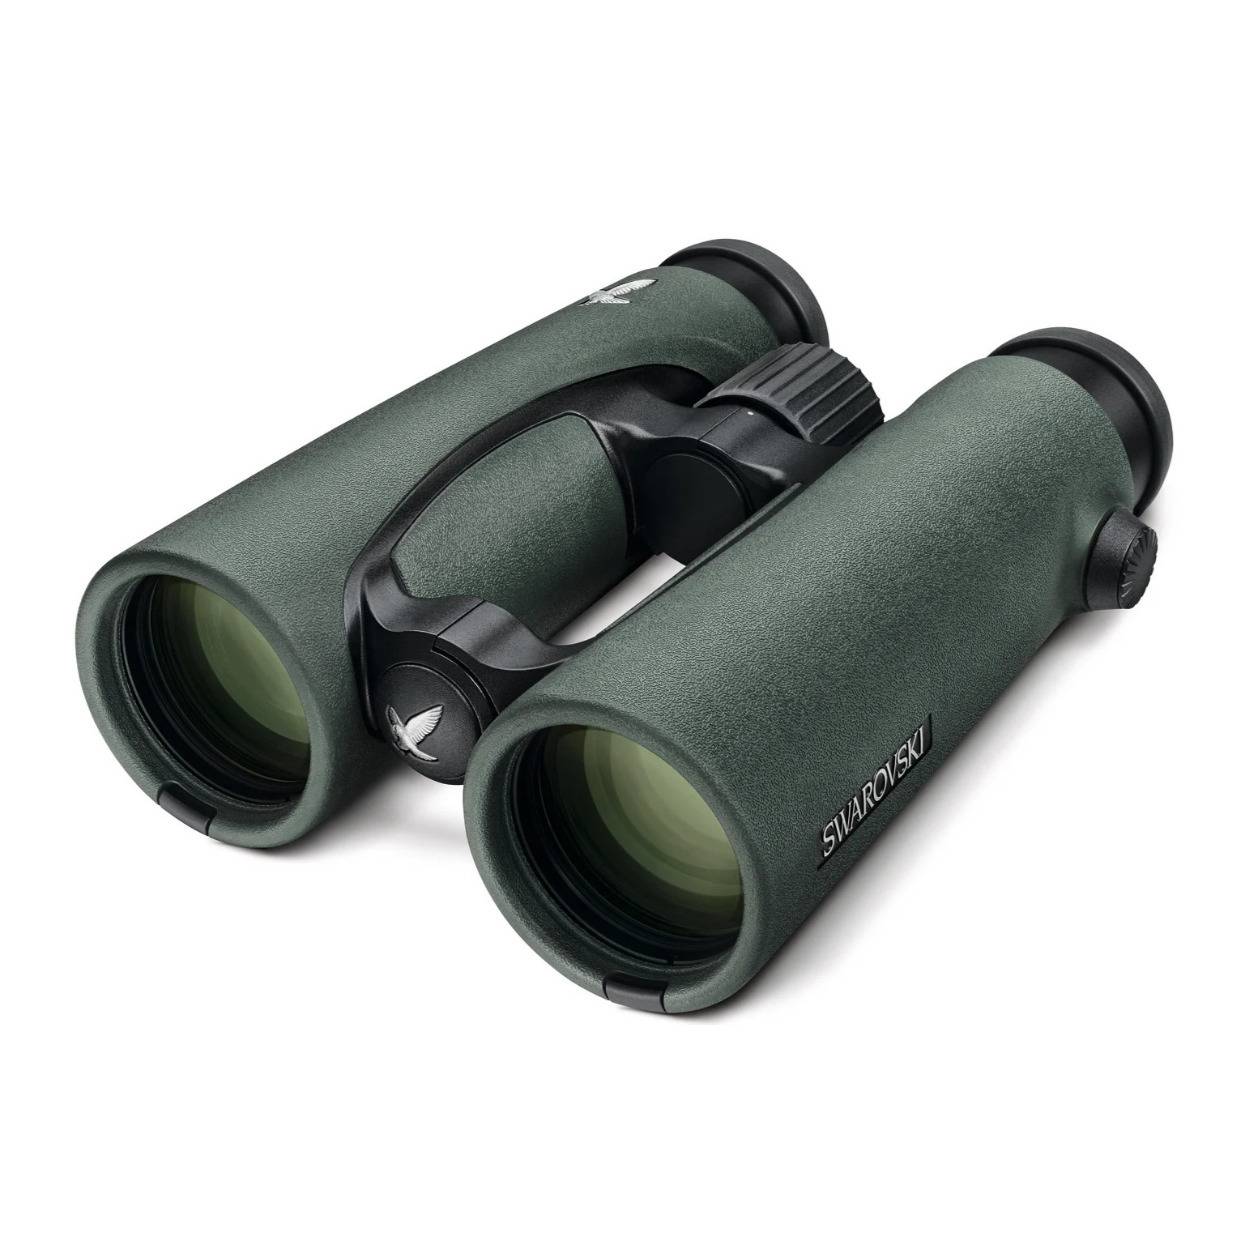 Swarovski 8.5x42 EL Binoculars with 2021 FieldPro Package (Green)